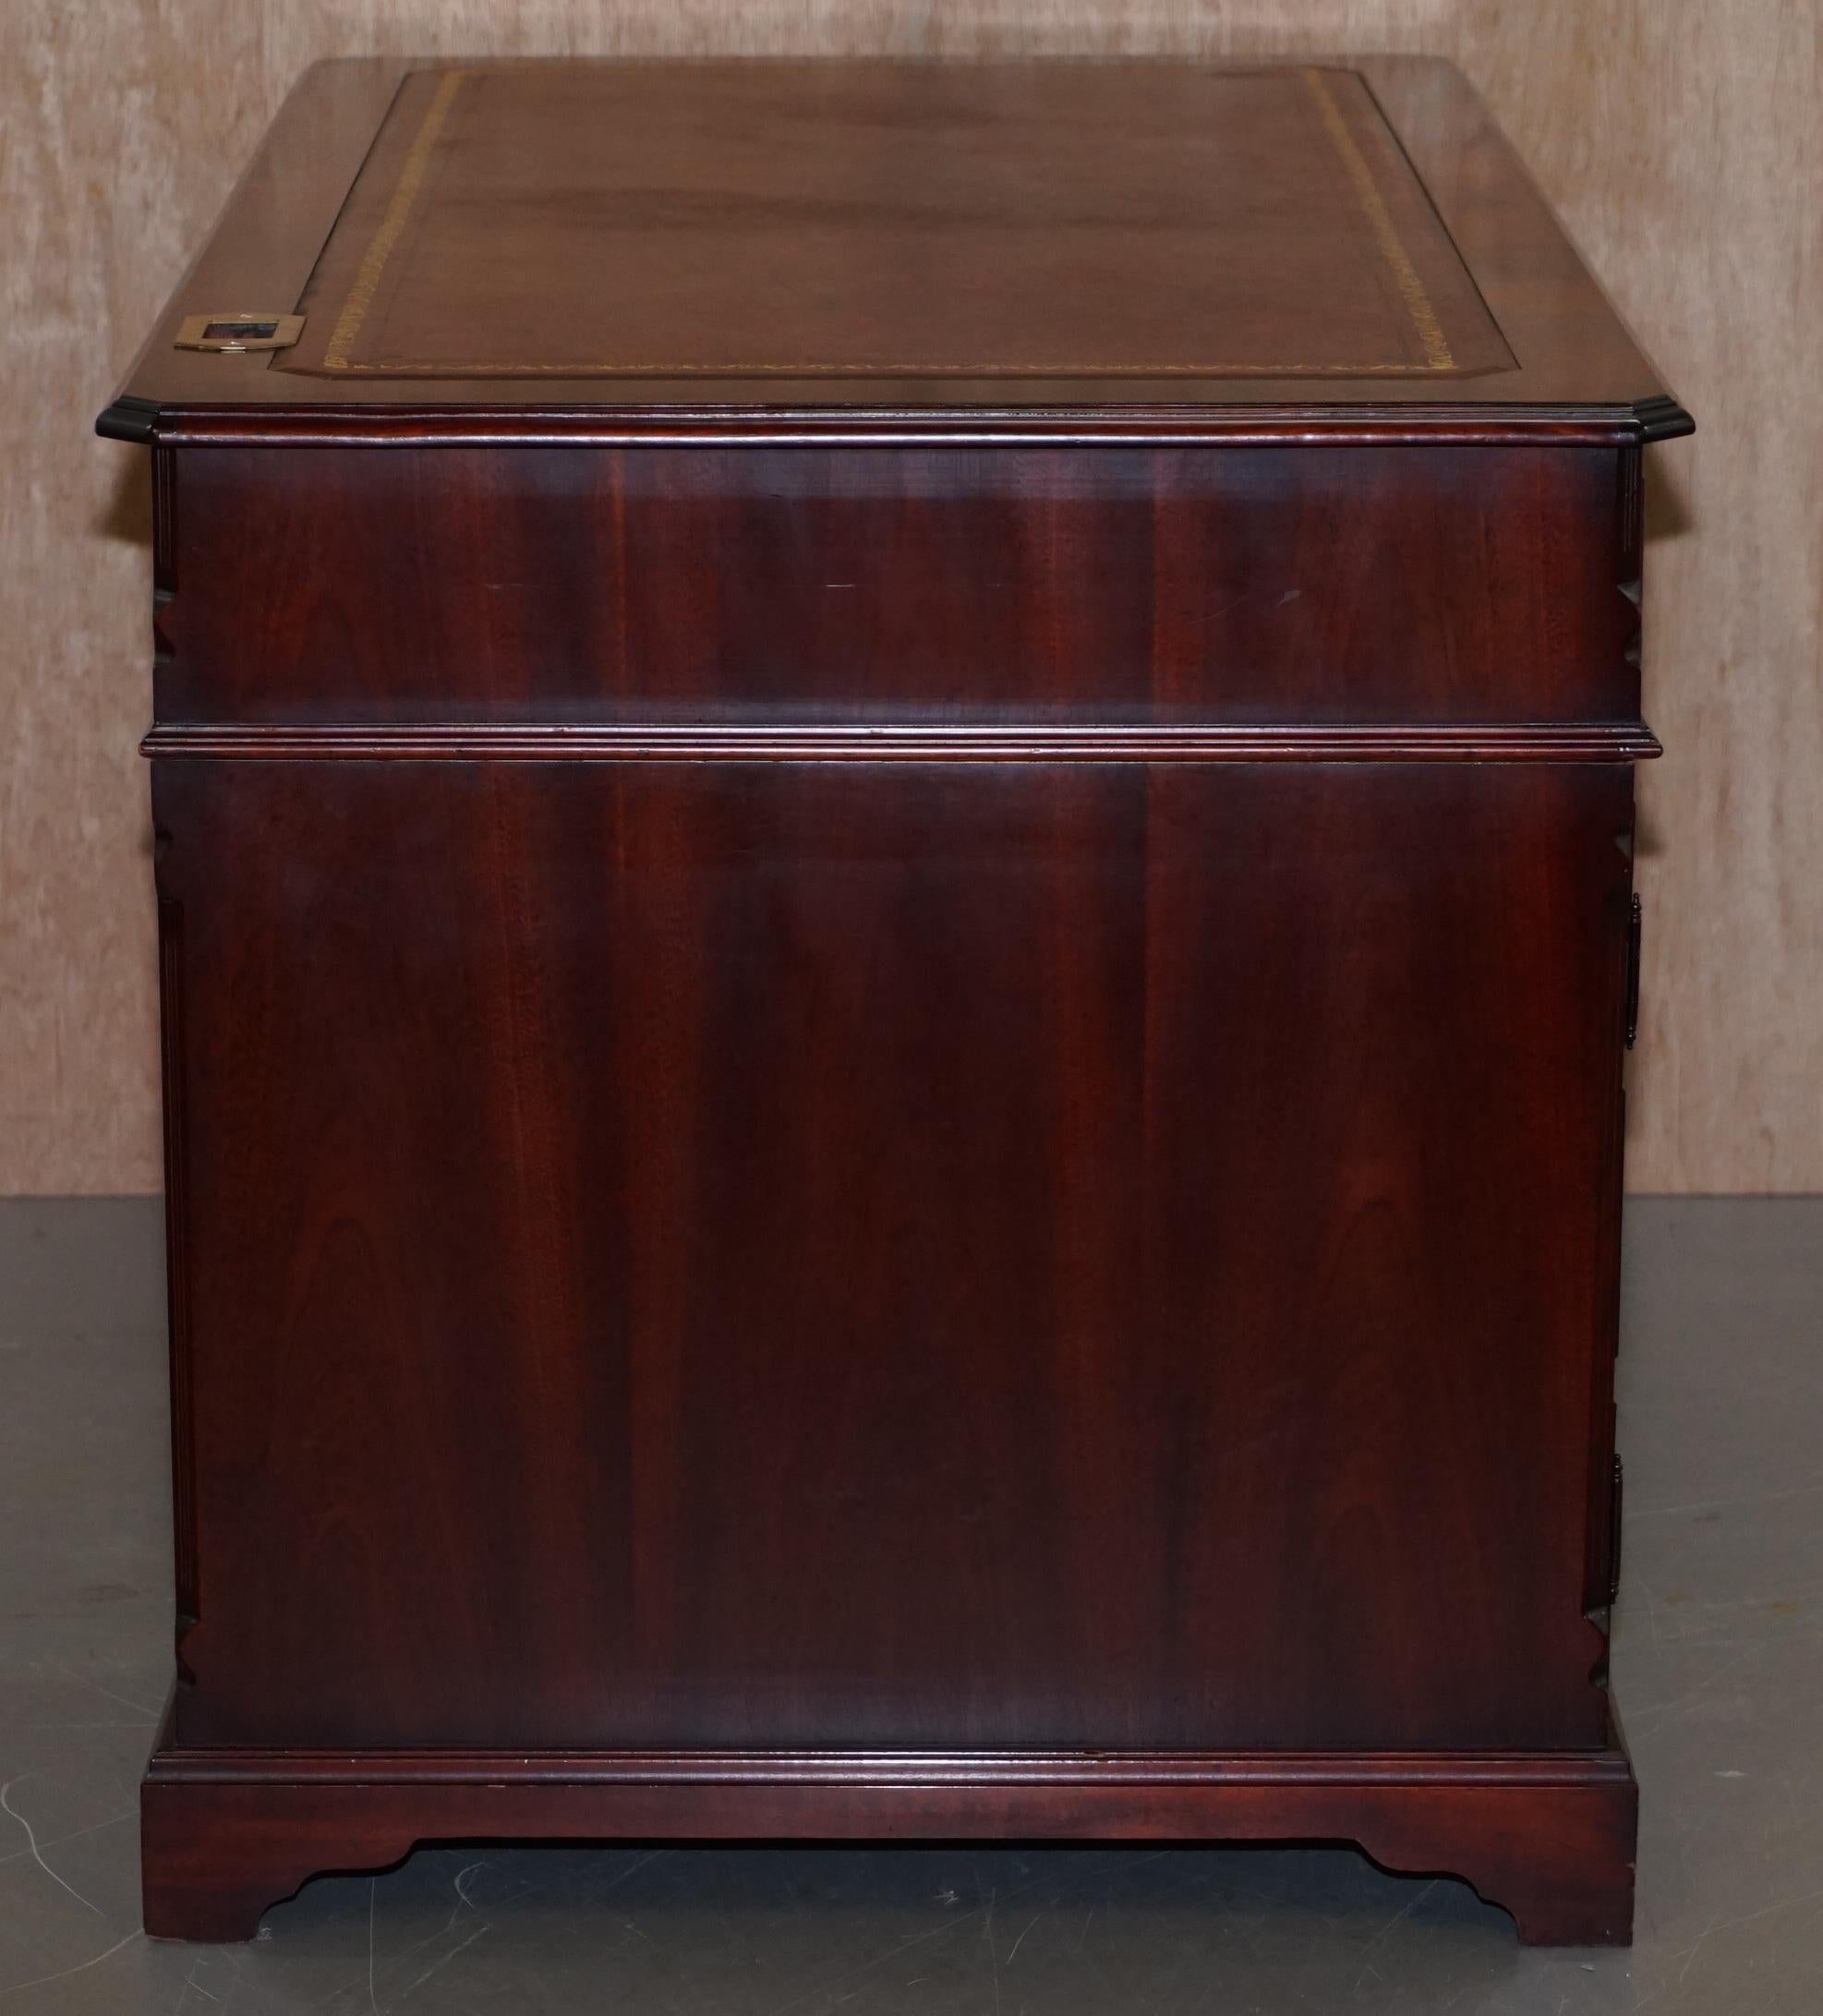 Luxury Flamed Hardwood Oxblood Leather Twin Pedestal Partner Desk Keyboard Shelf 5